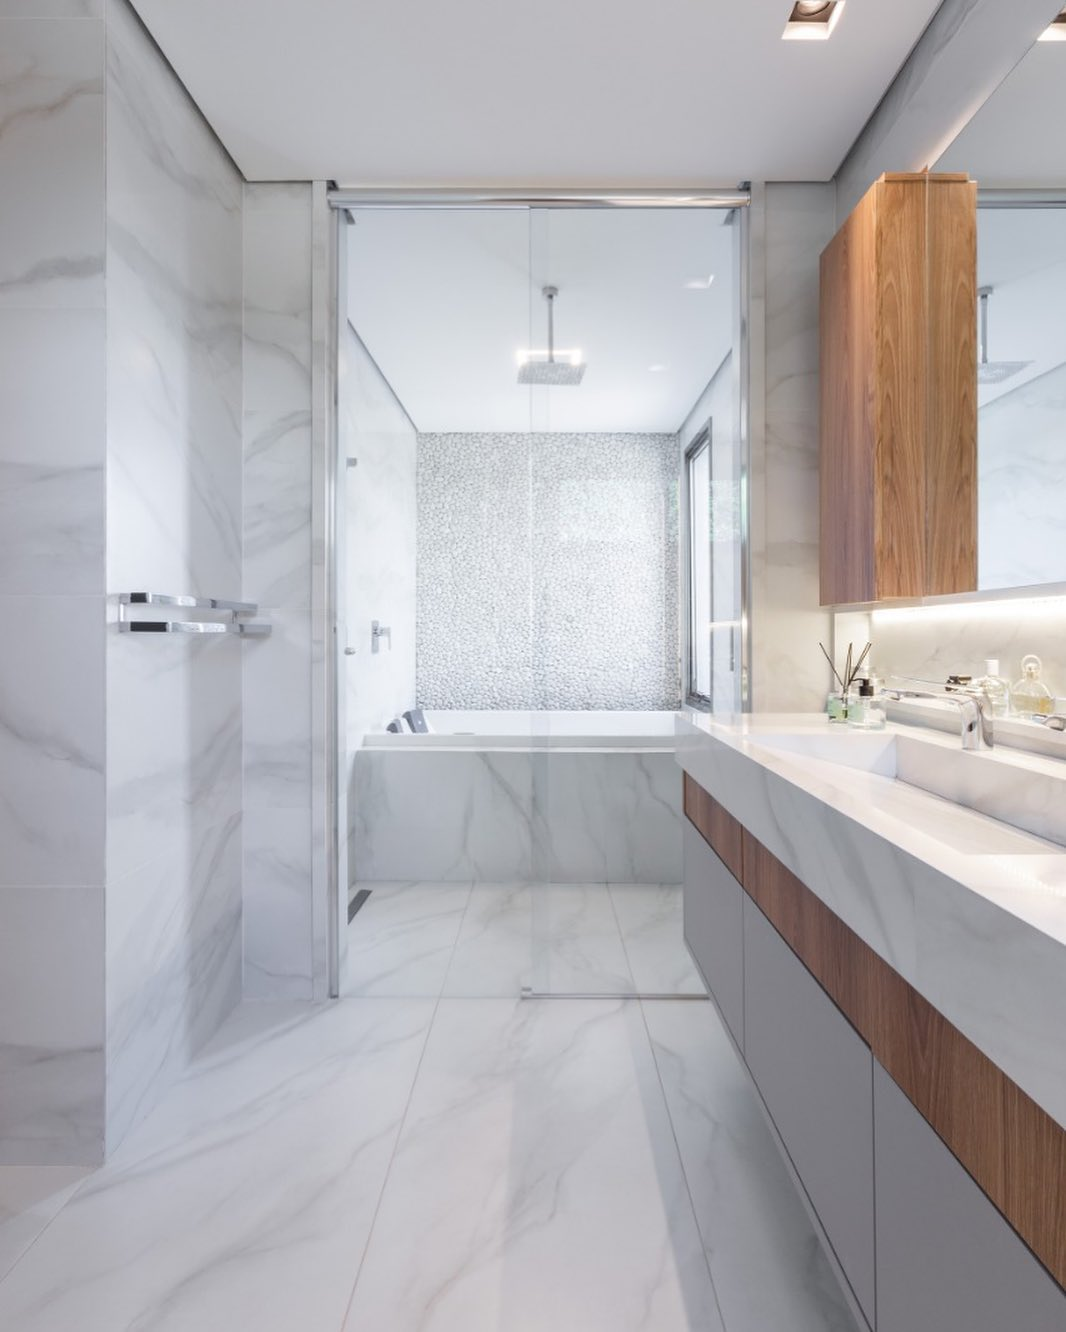 Banheiro contemporâneo marmorizado e amadeirado com penteadeira e banheira Decor Salteado